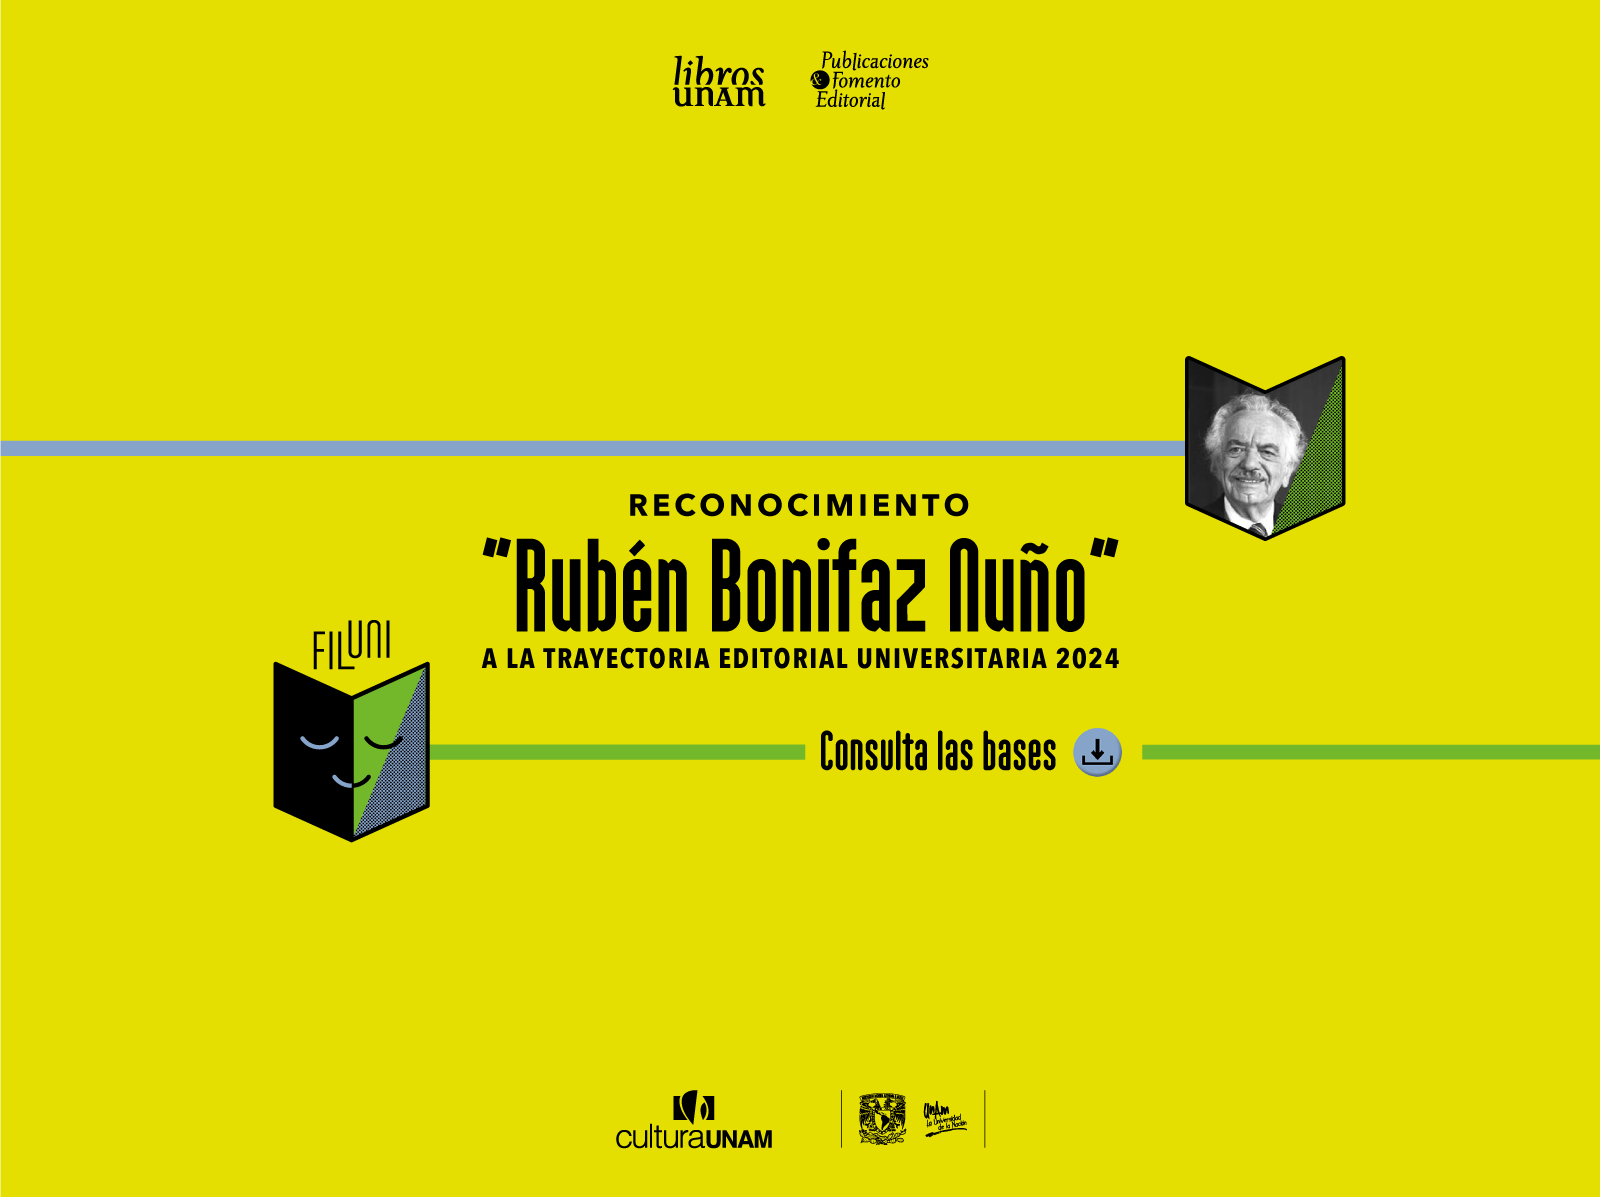 Convocatoria RBN a la trayectoria Editorial 2024 Filuni - UNAM